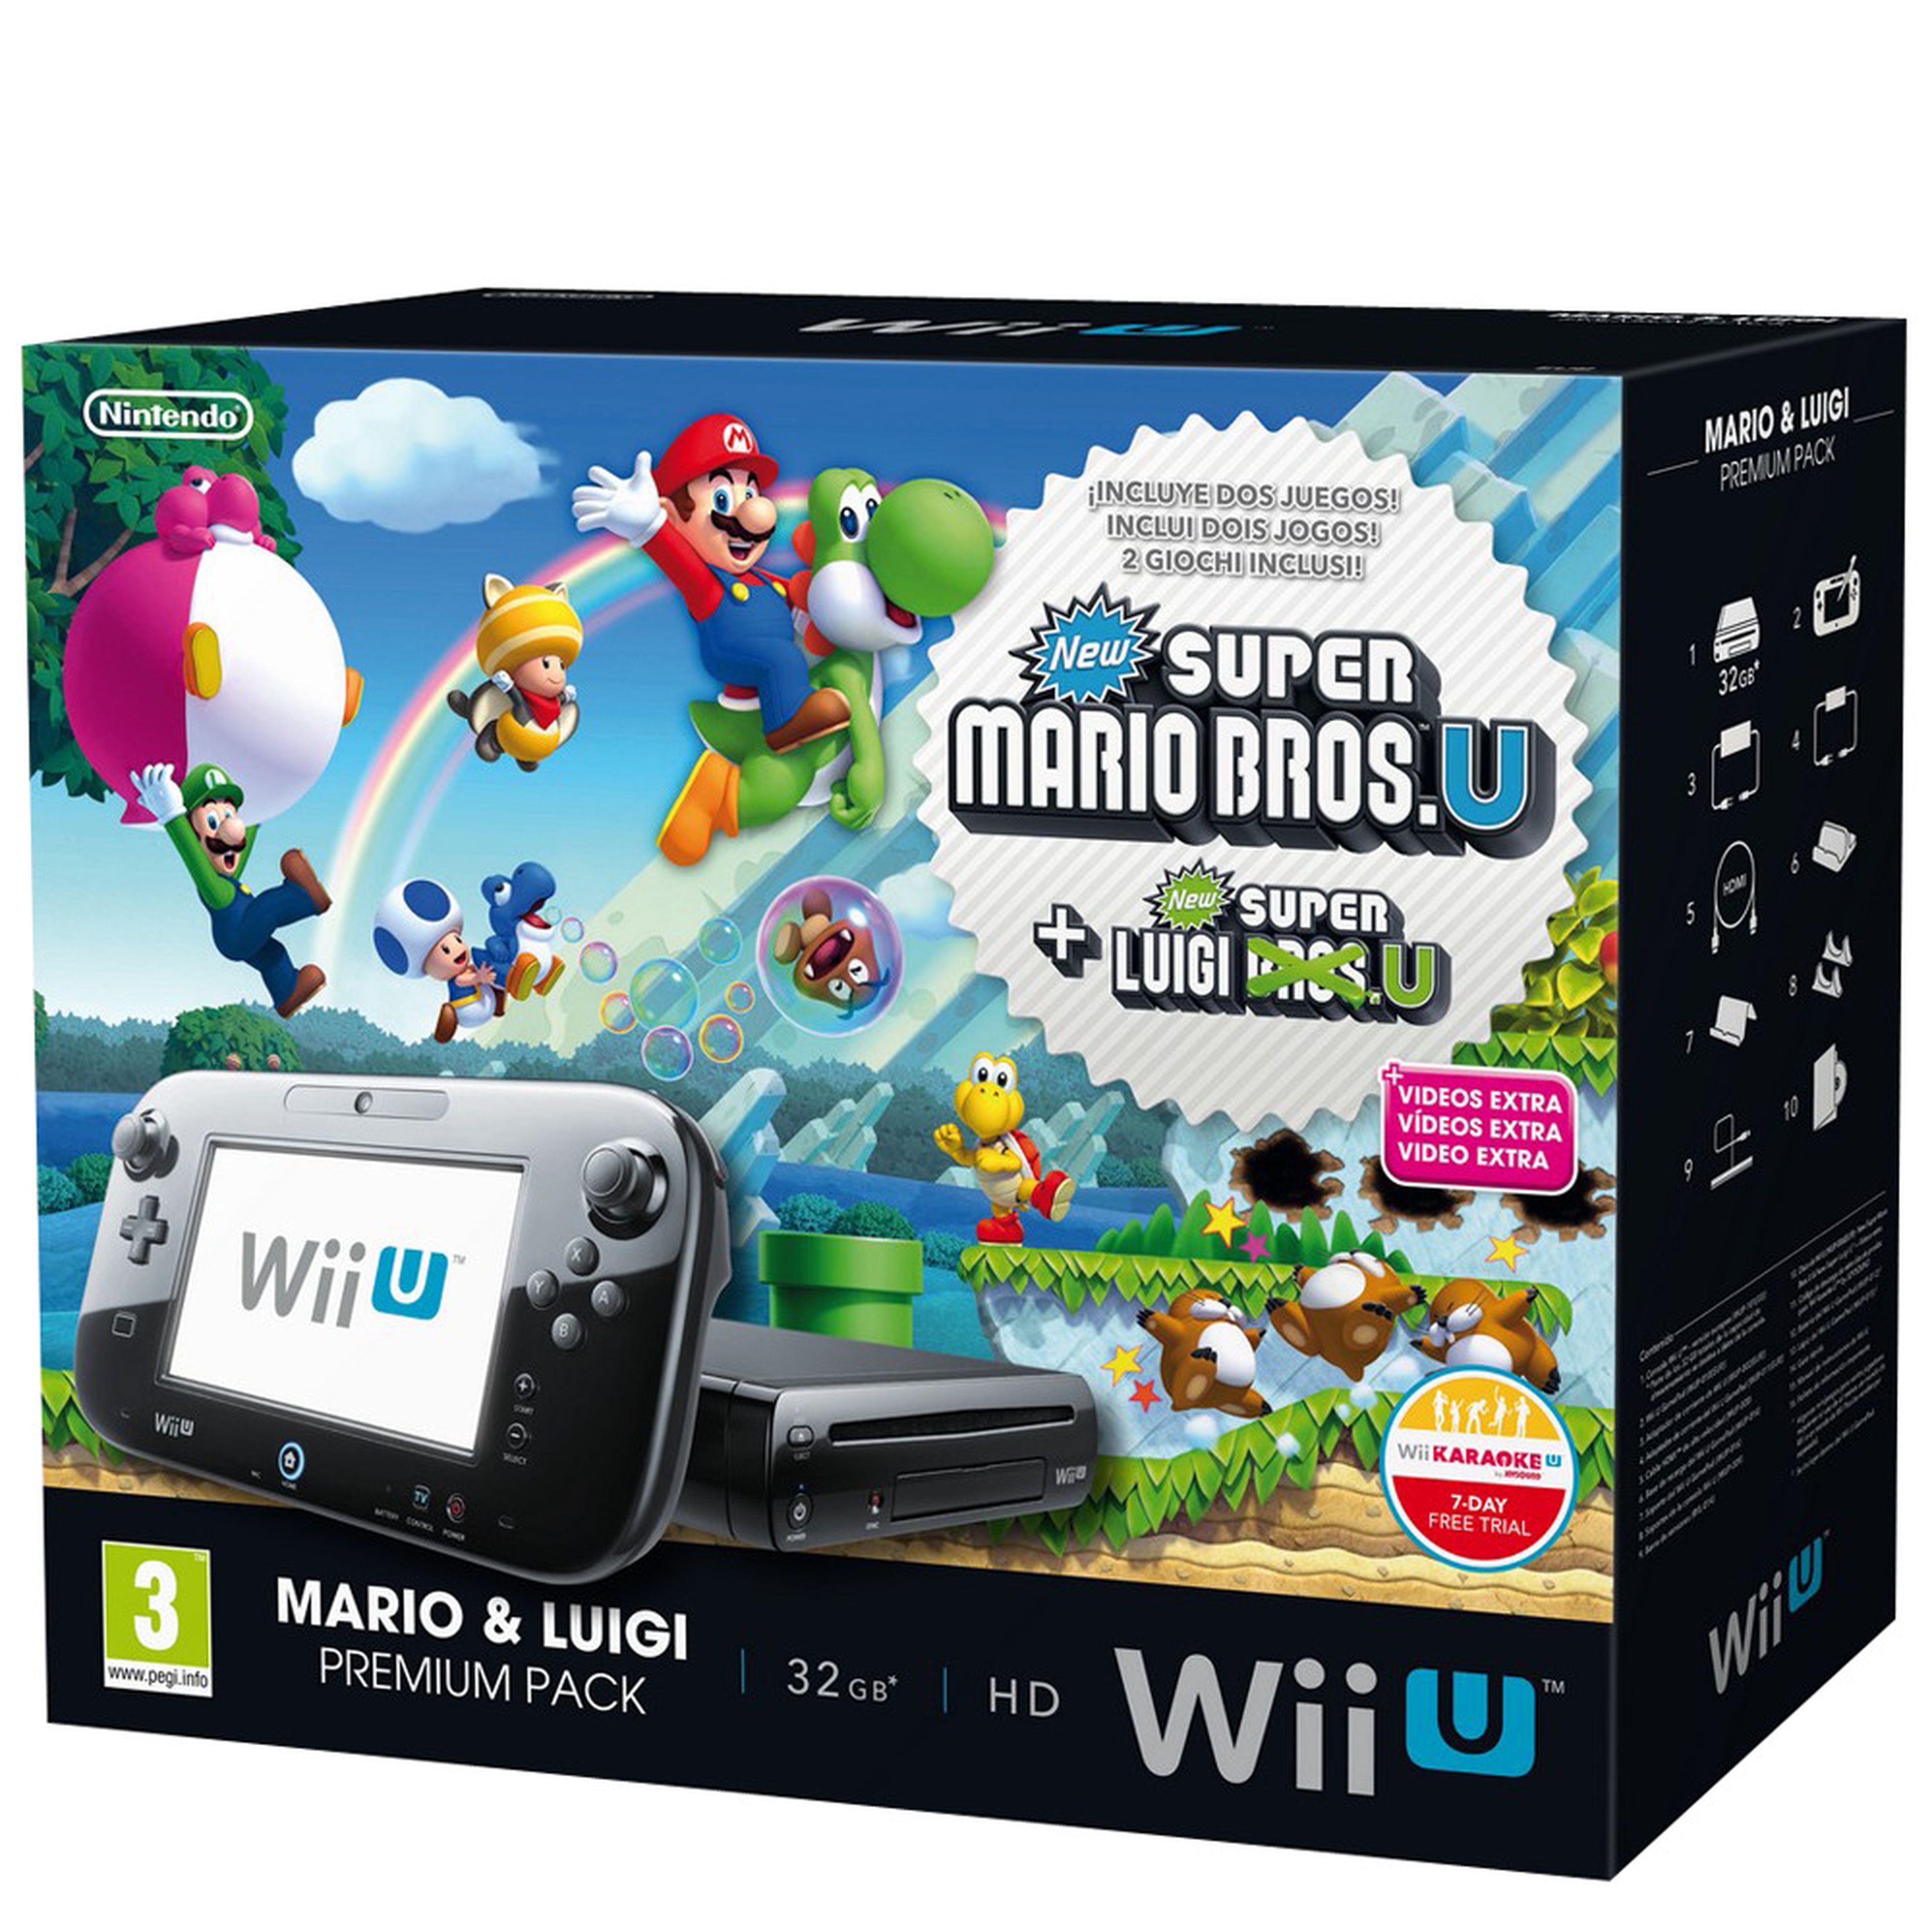 Concurso Wii U y Super Mario 3D World